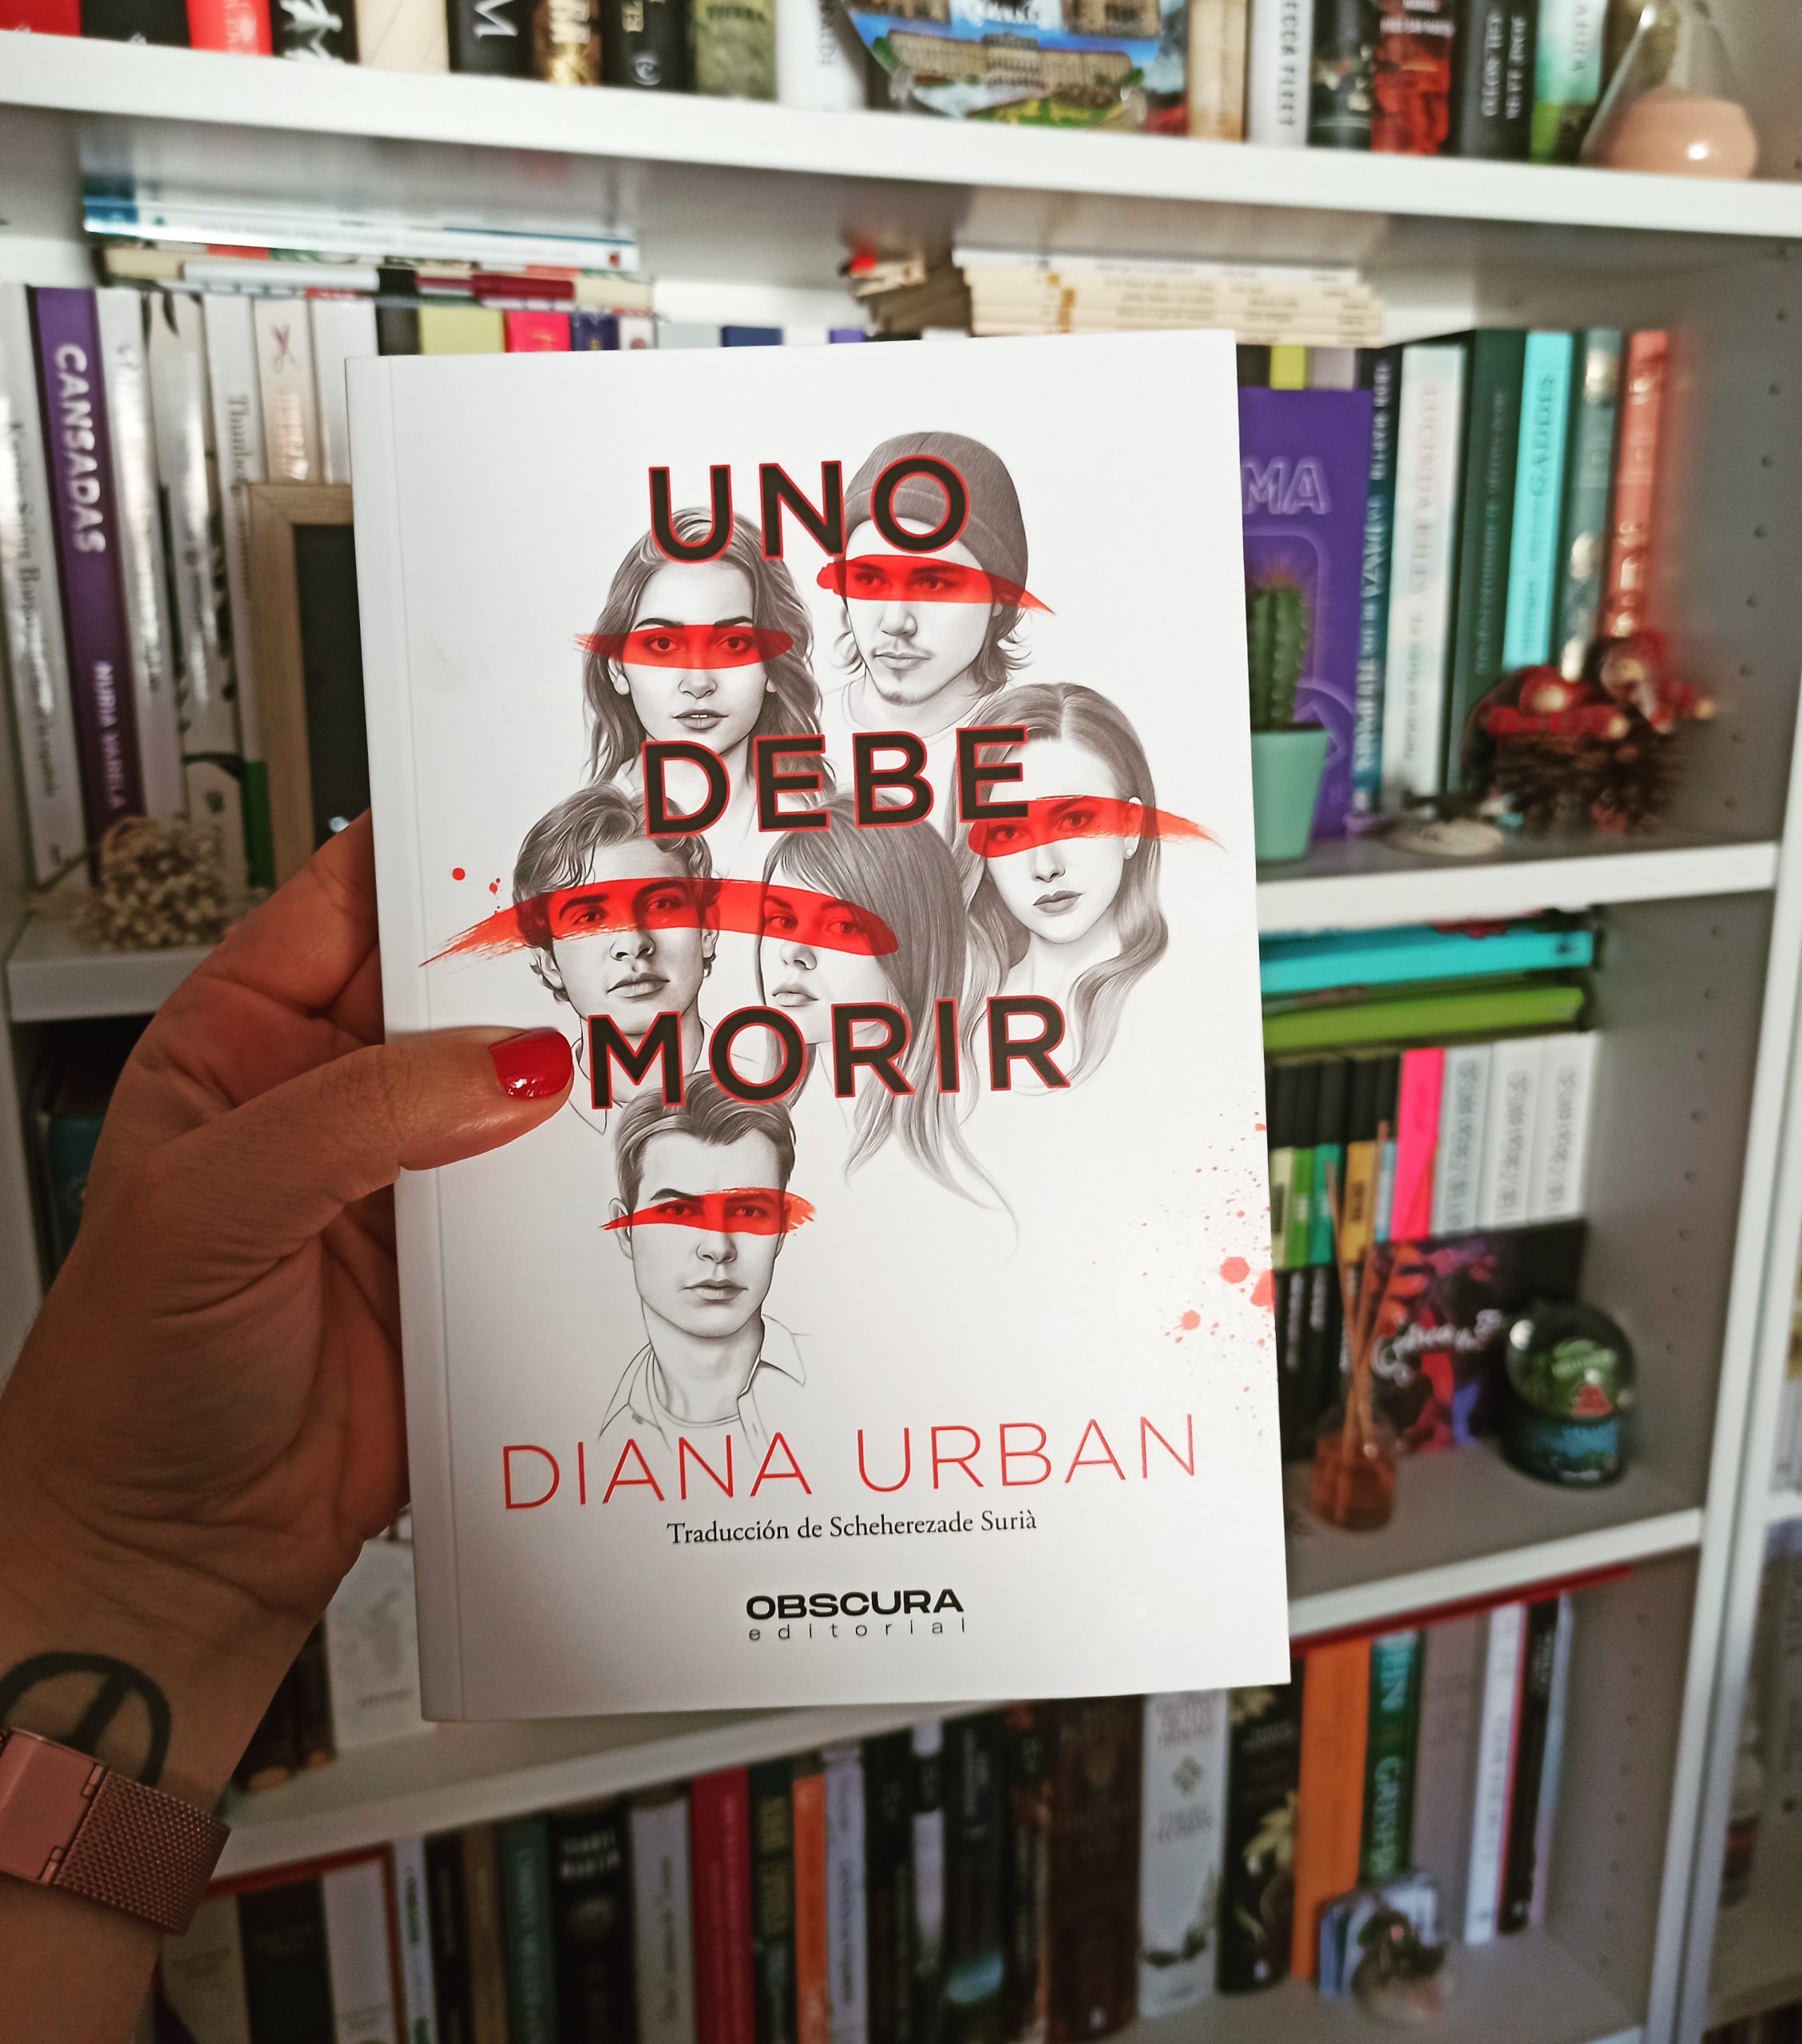 UNO DEBE MORIR, de Diana Urban.